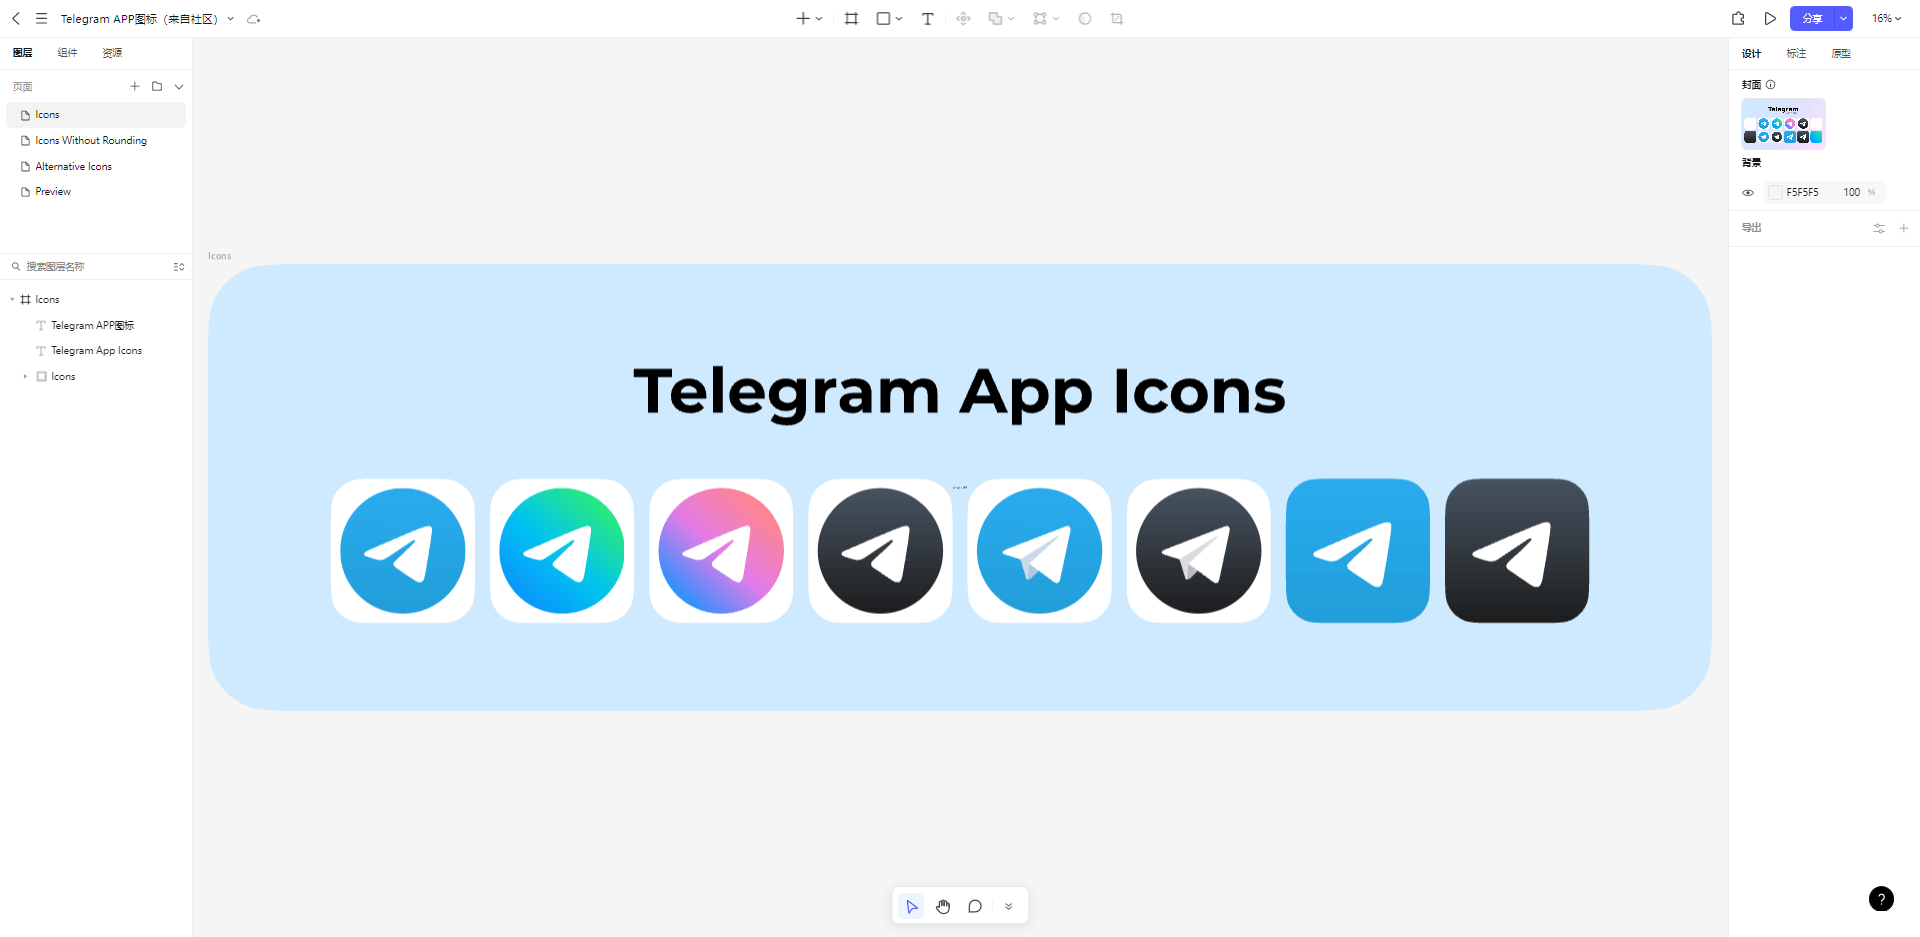 telegram app icons